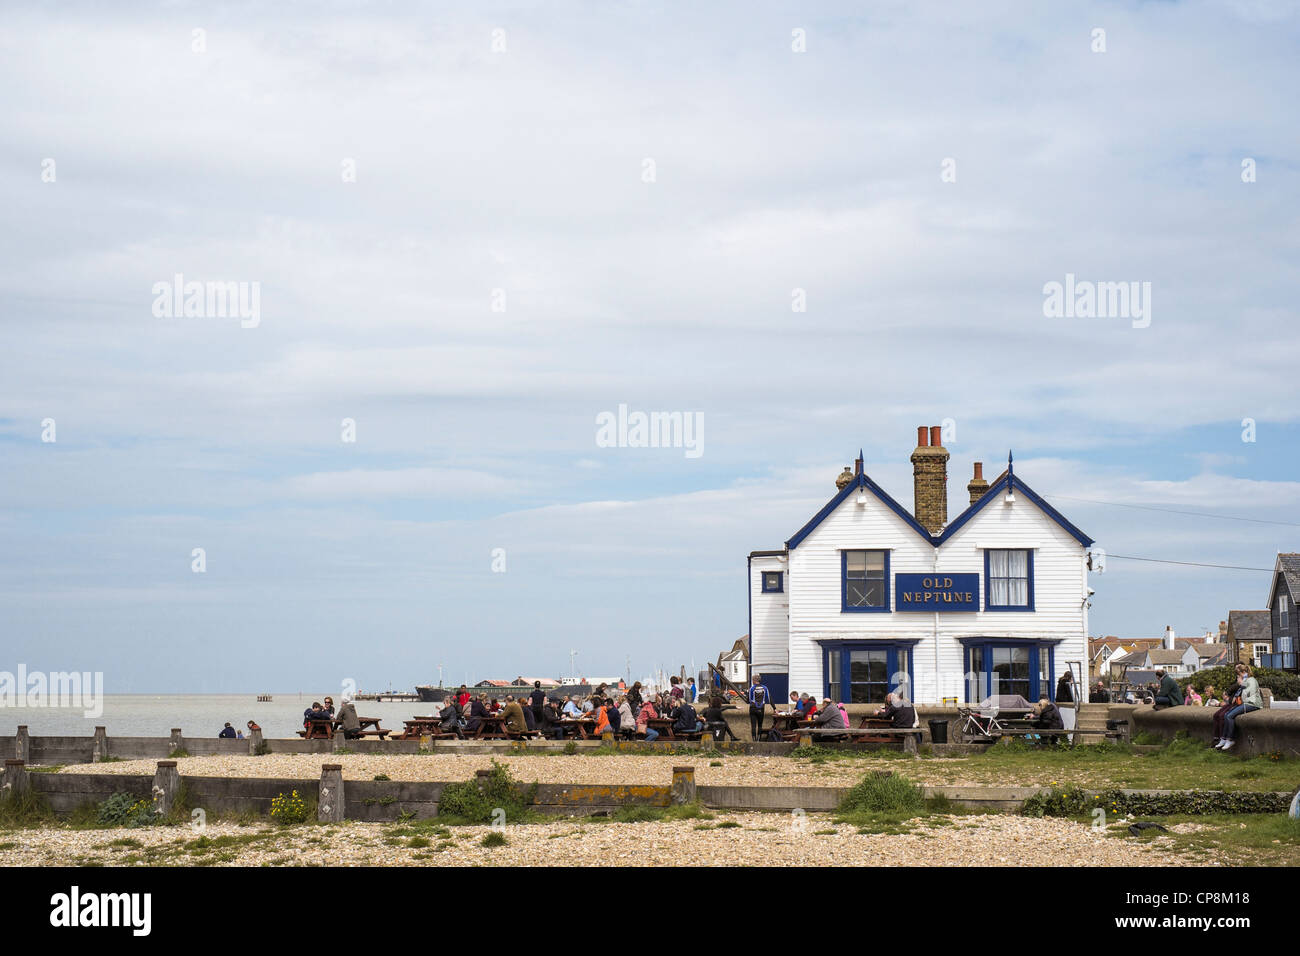 Le vieux Neptune Pub, sur la plage, Whitstable, Kent, UK. Banque D'Images